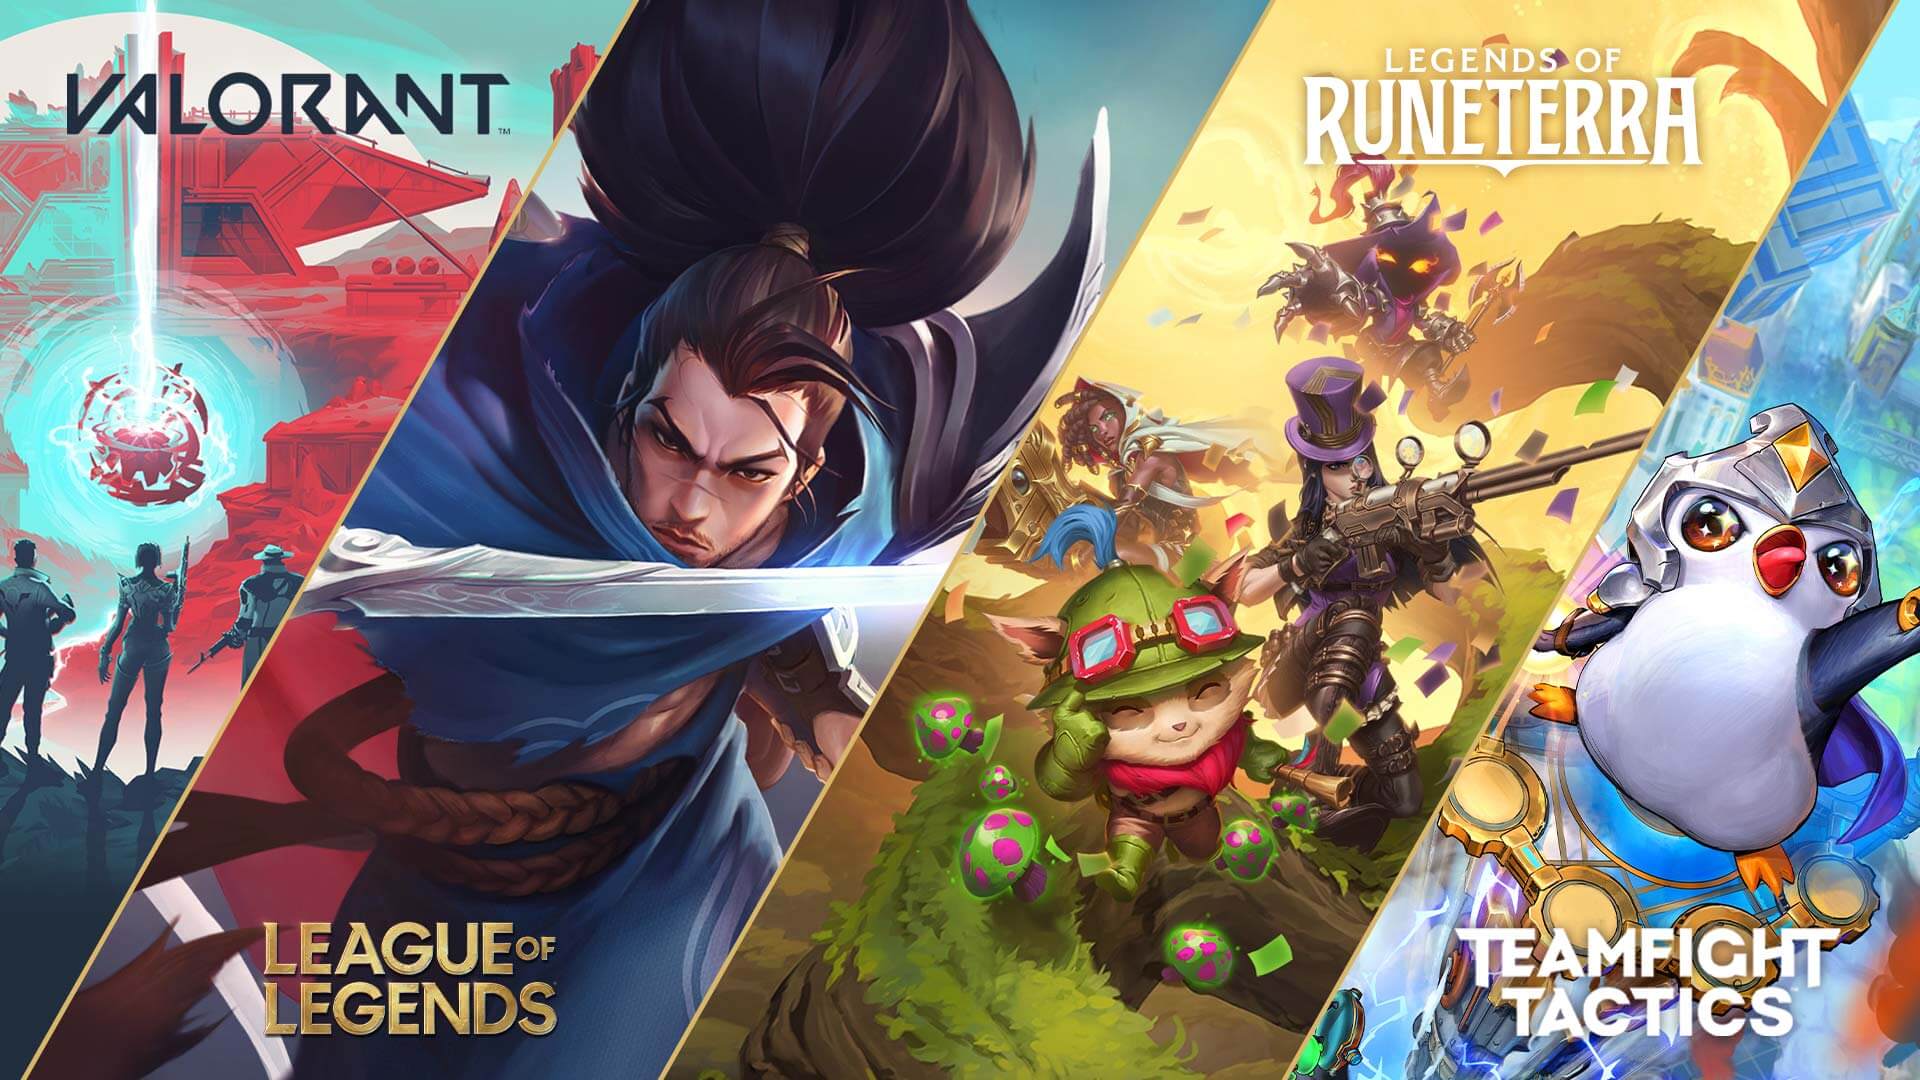 Legends Of Runeterra 2021 Gaming Wallpapers